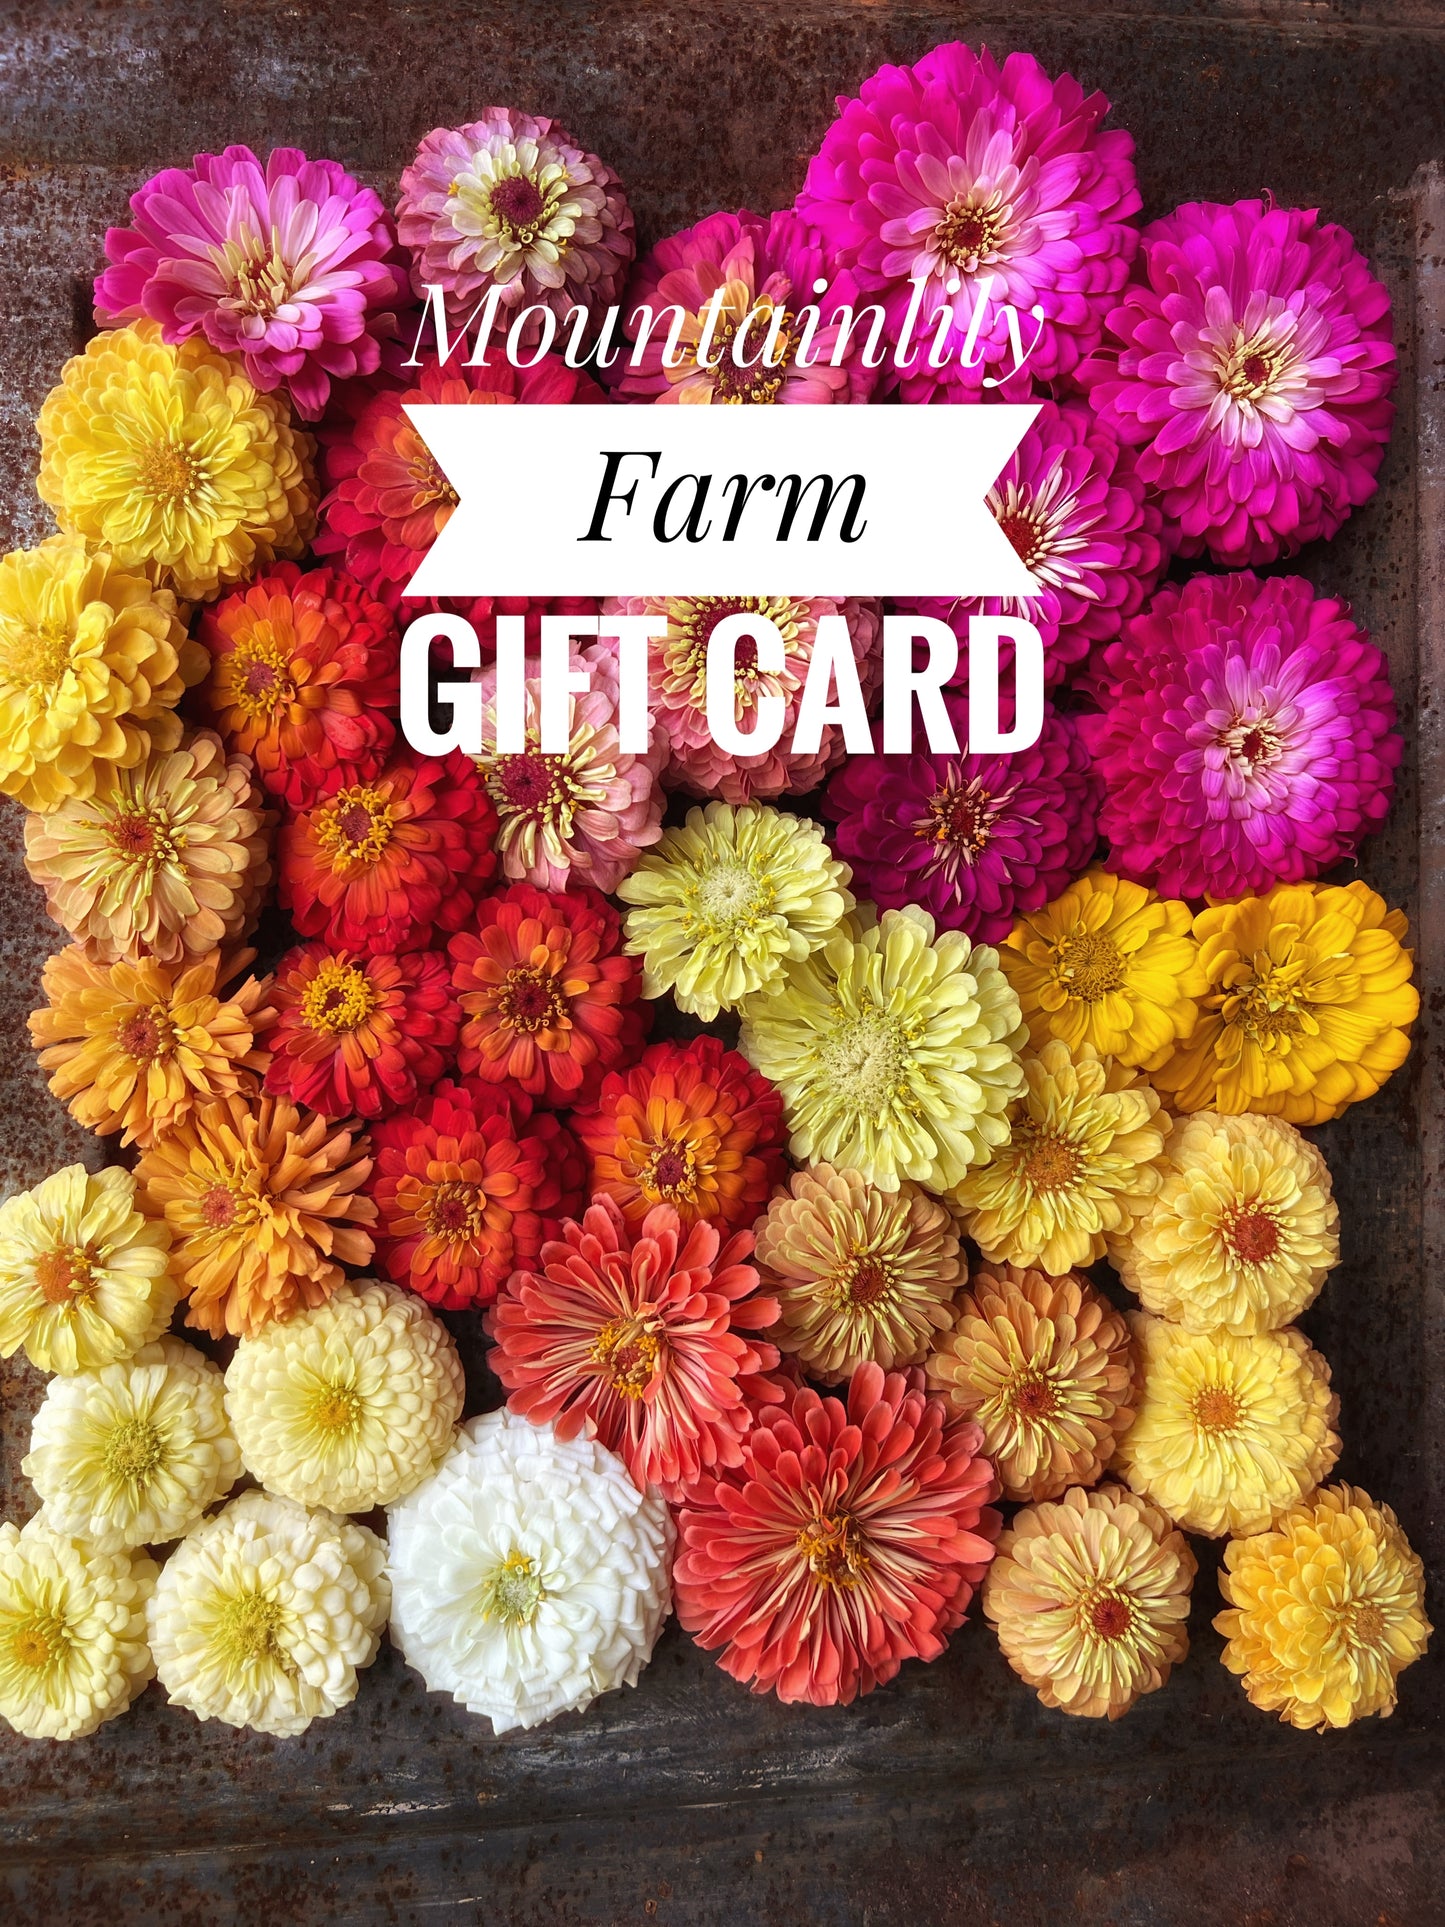 Mountainlily Farm Gift Card